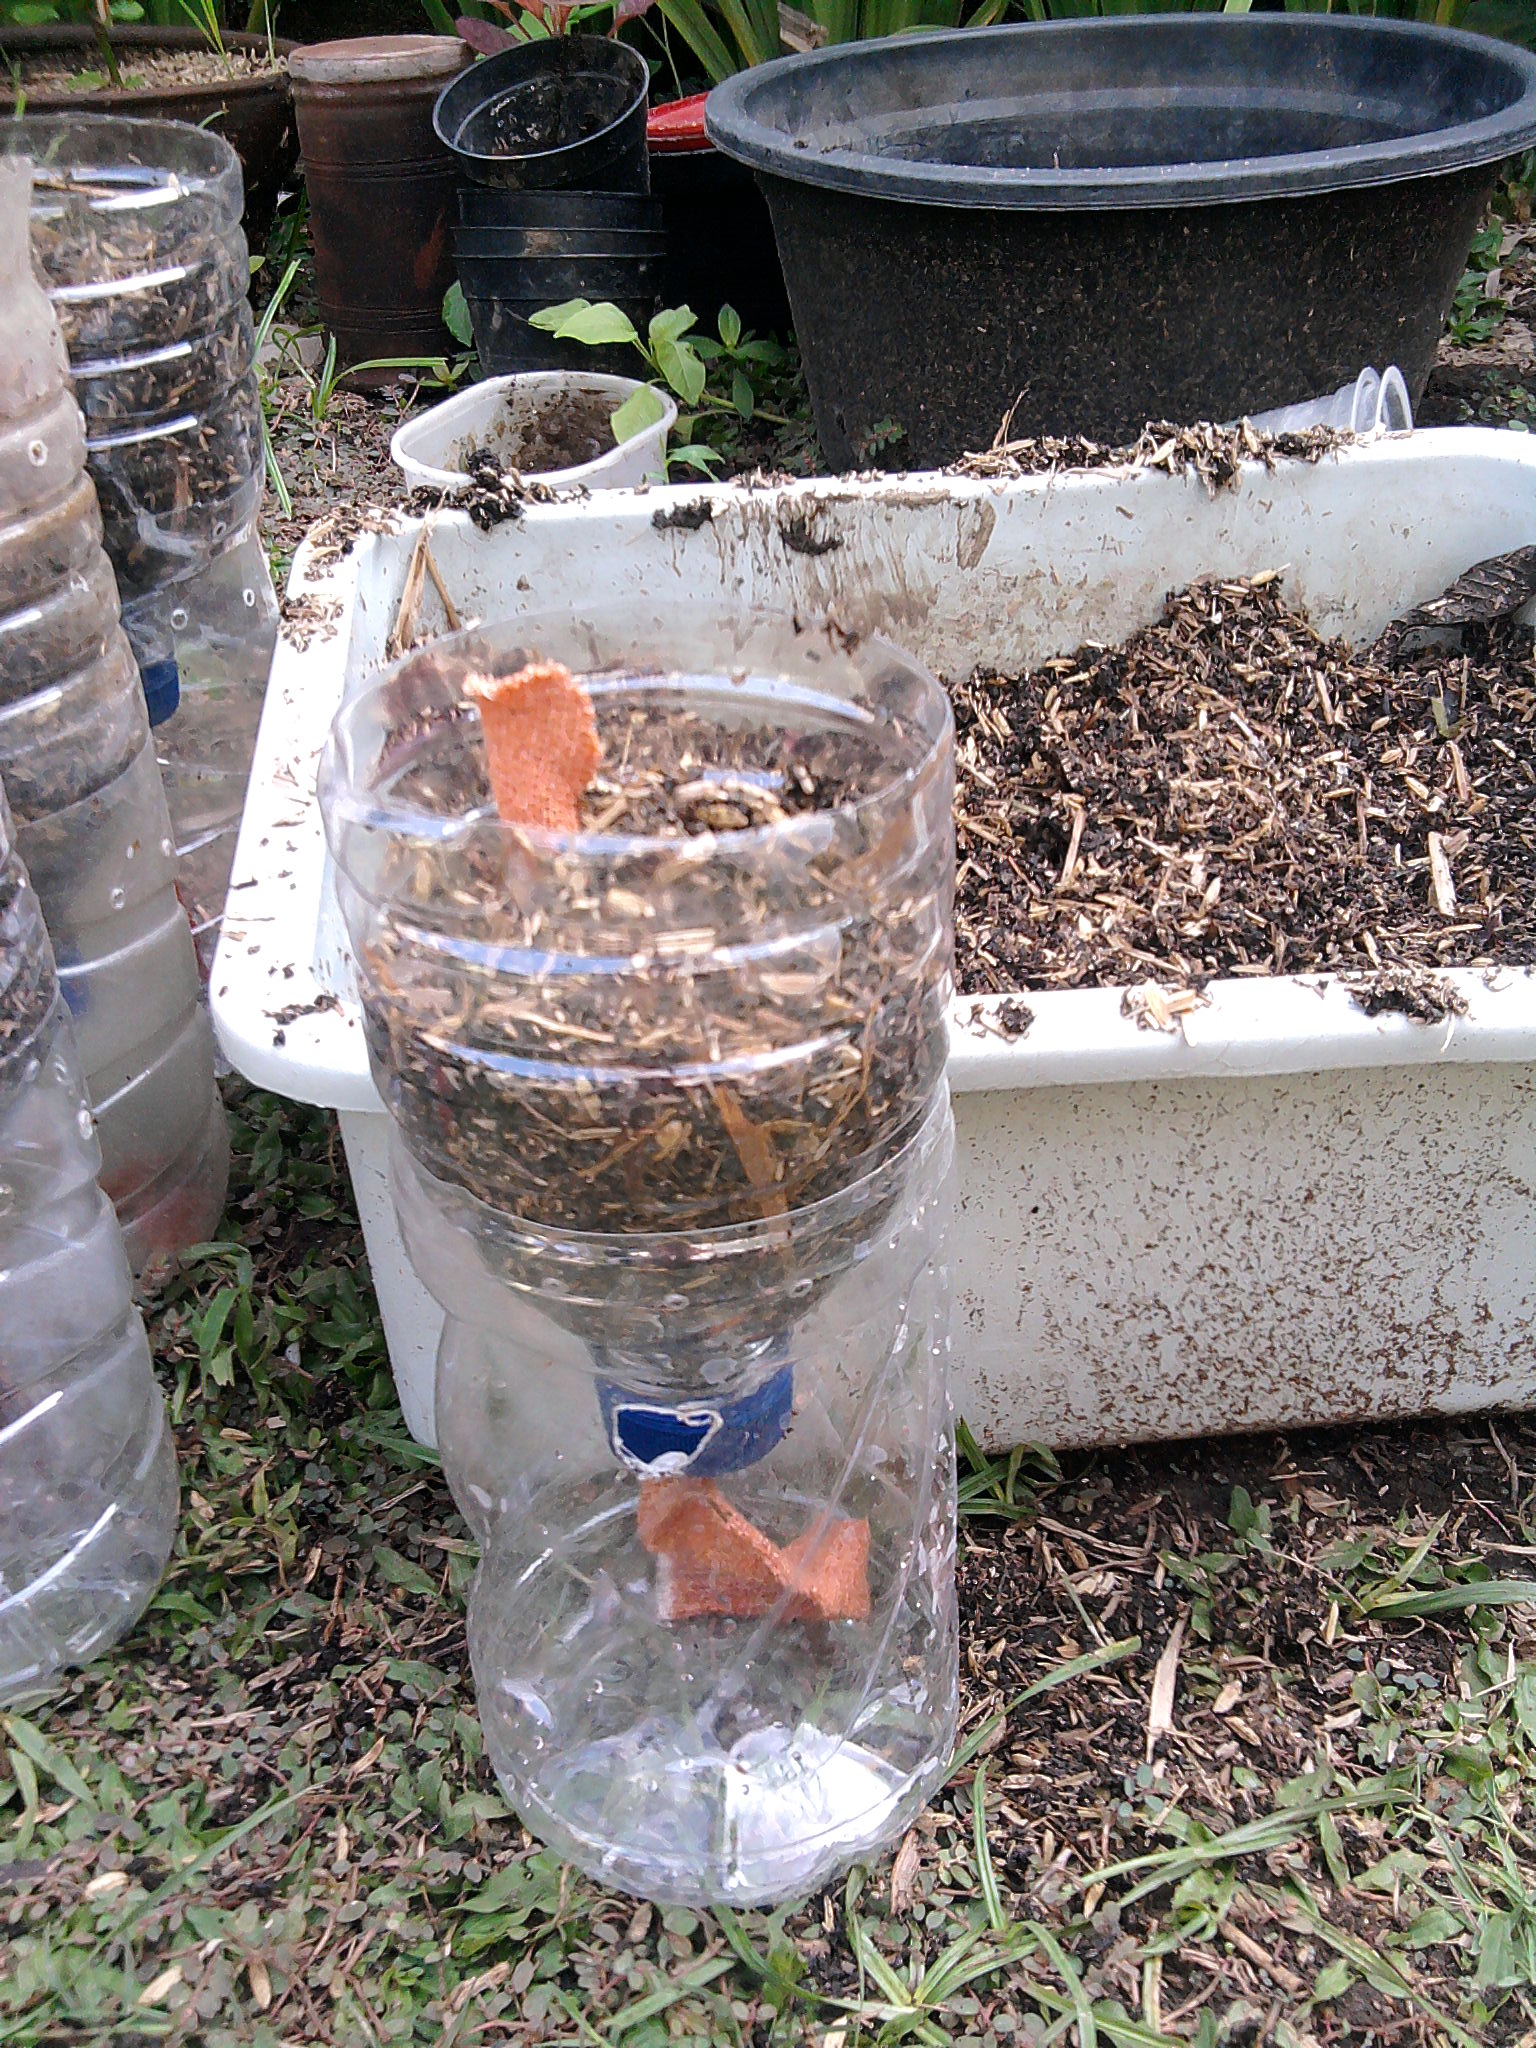 membuat “self watering planter” dari botol bekas